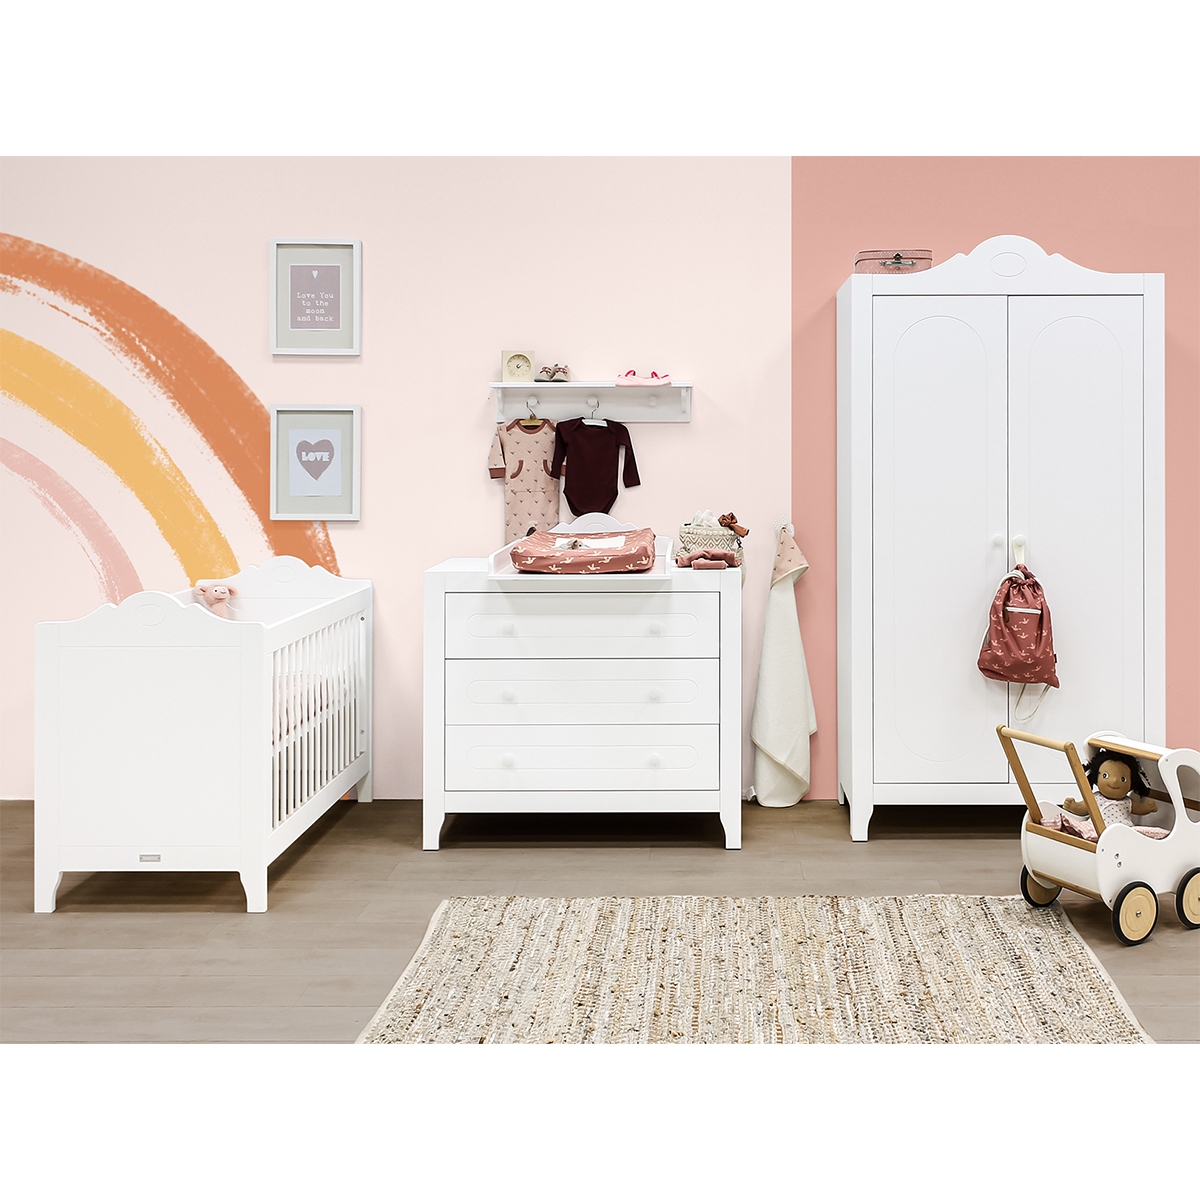 Chambre complète lit bébé 60x120, commode à langer et armoire 2 portes Bopita Evi - Blanc